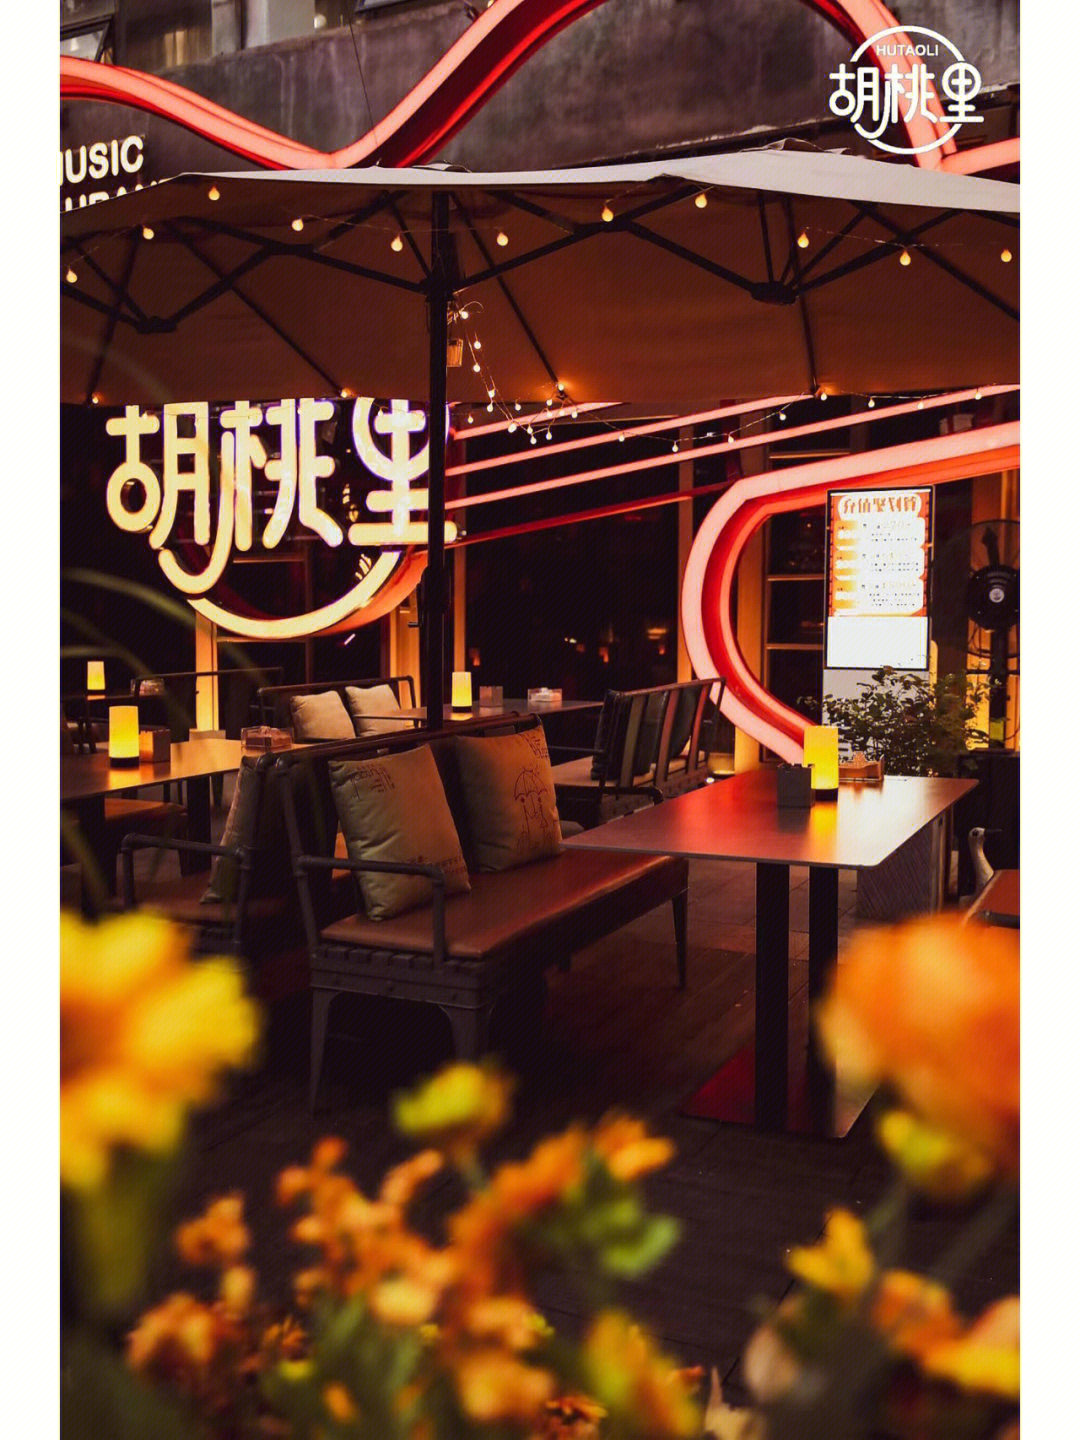 想去自然景观餐厅我推荐就去胡桃里音乐酒馆就在华侨城里面静谧美好晒